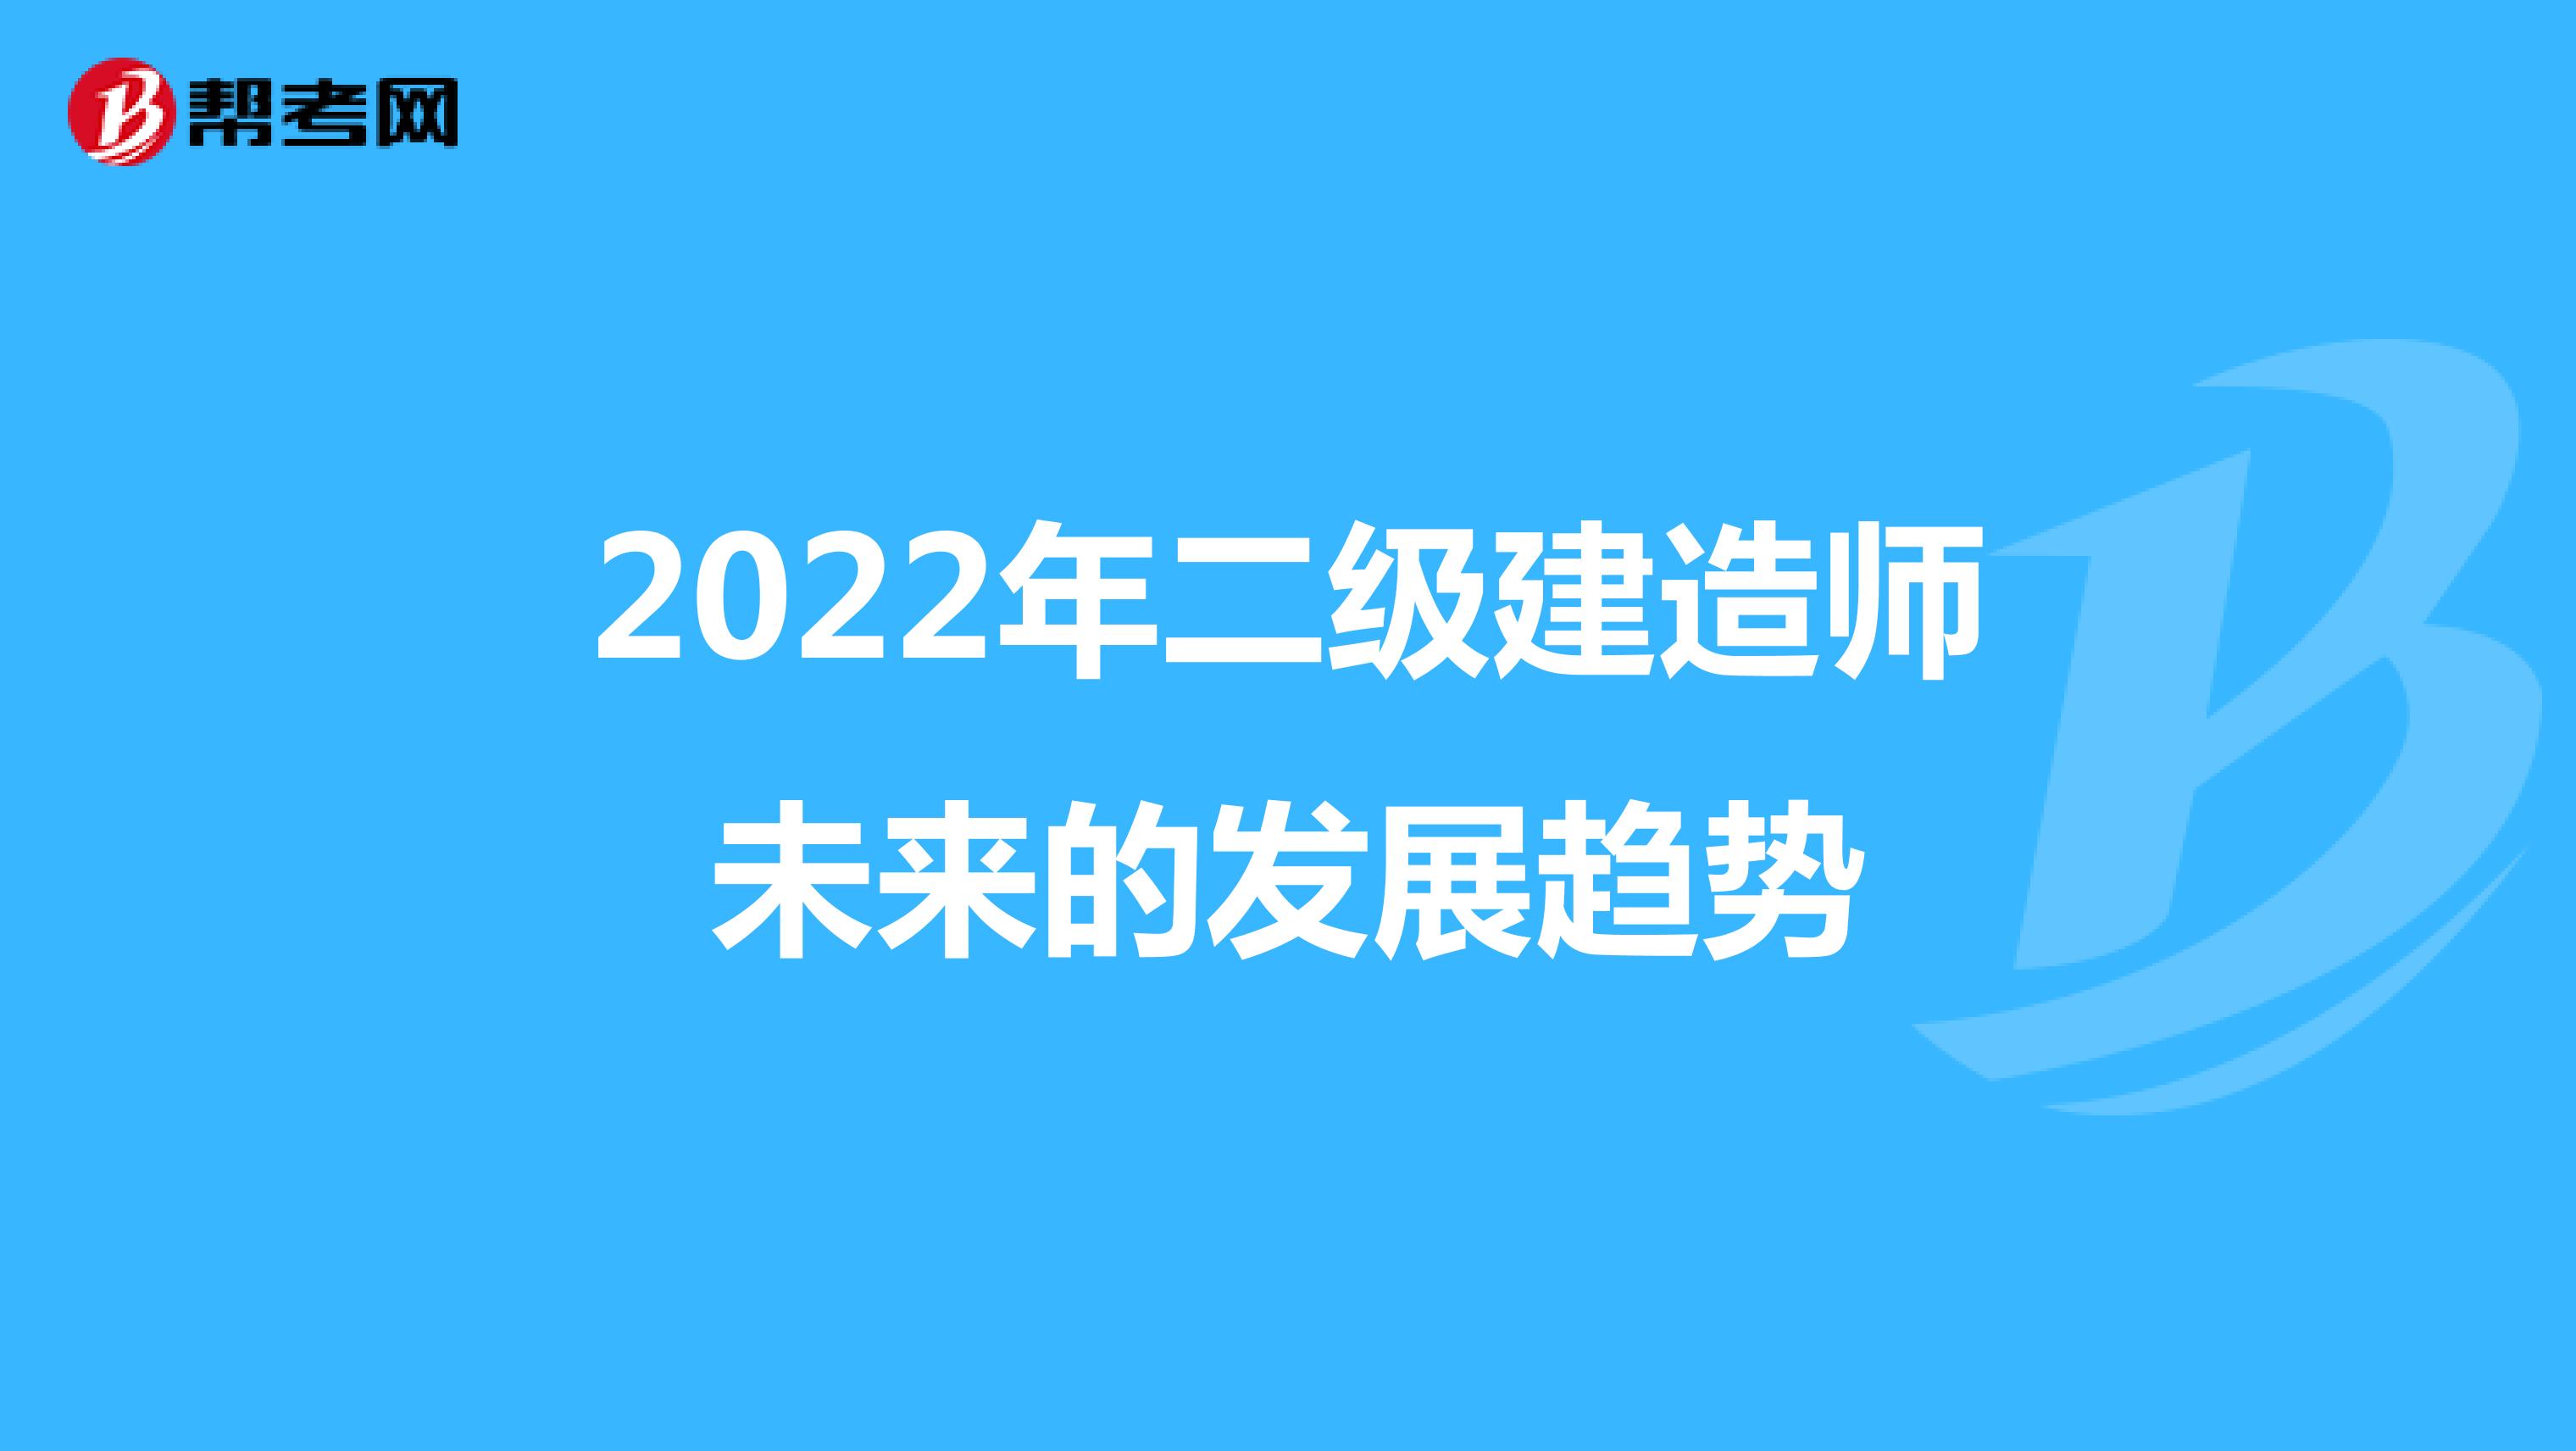 2022年二级建造师未来的发展趋势